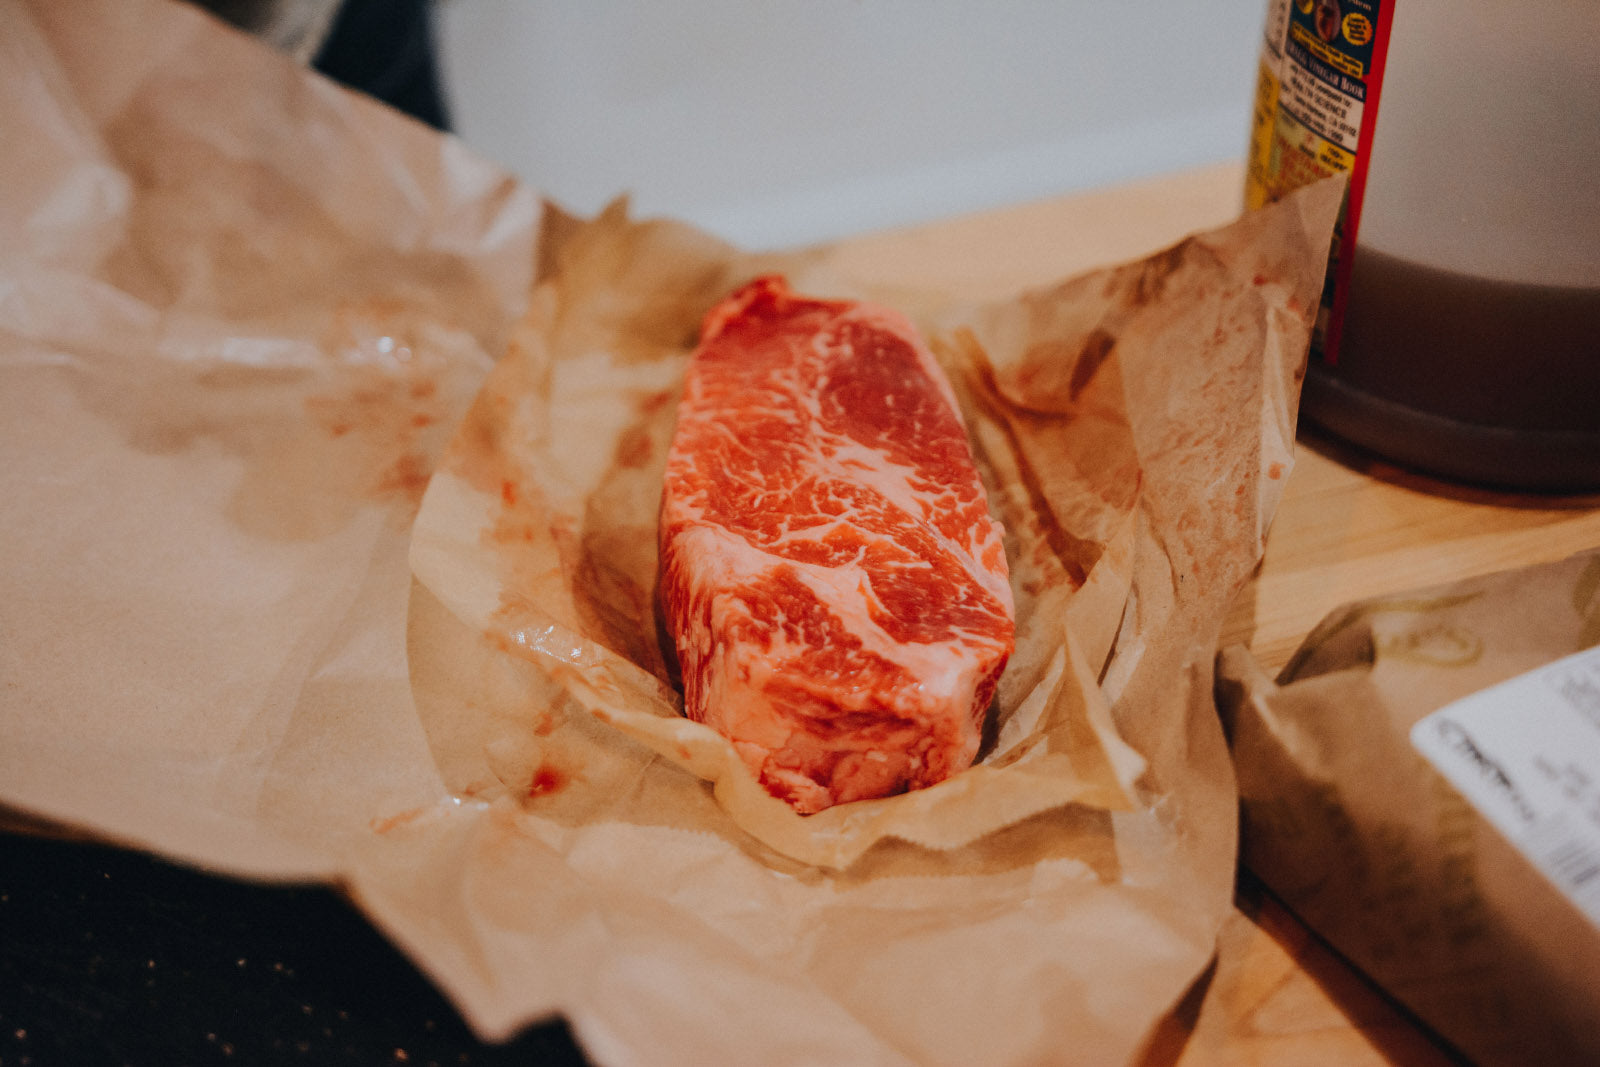 Raw steak in butcher paper